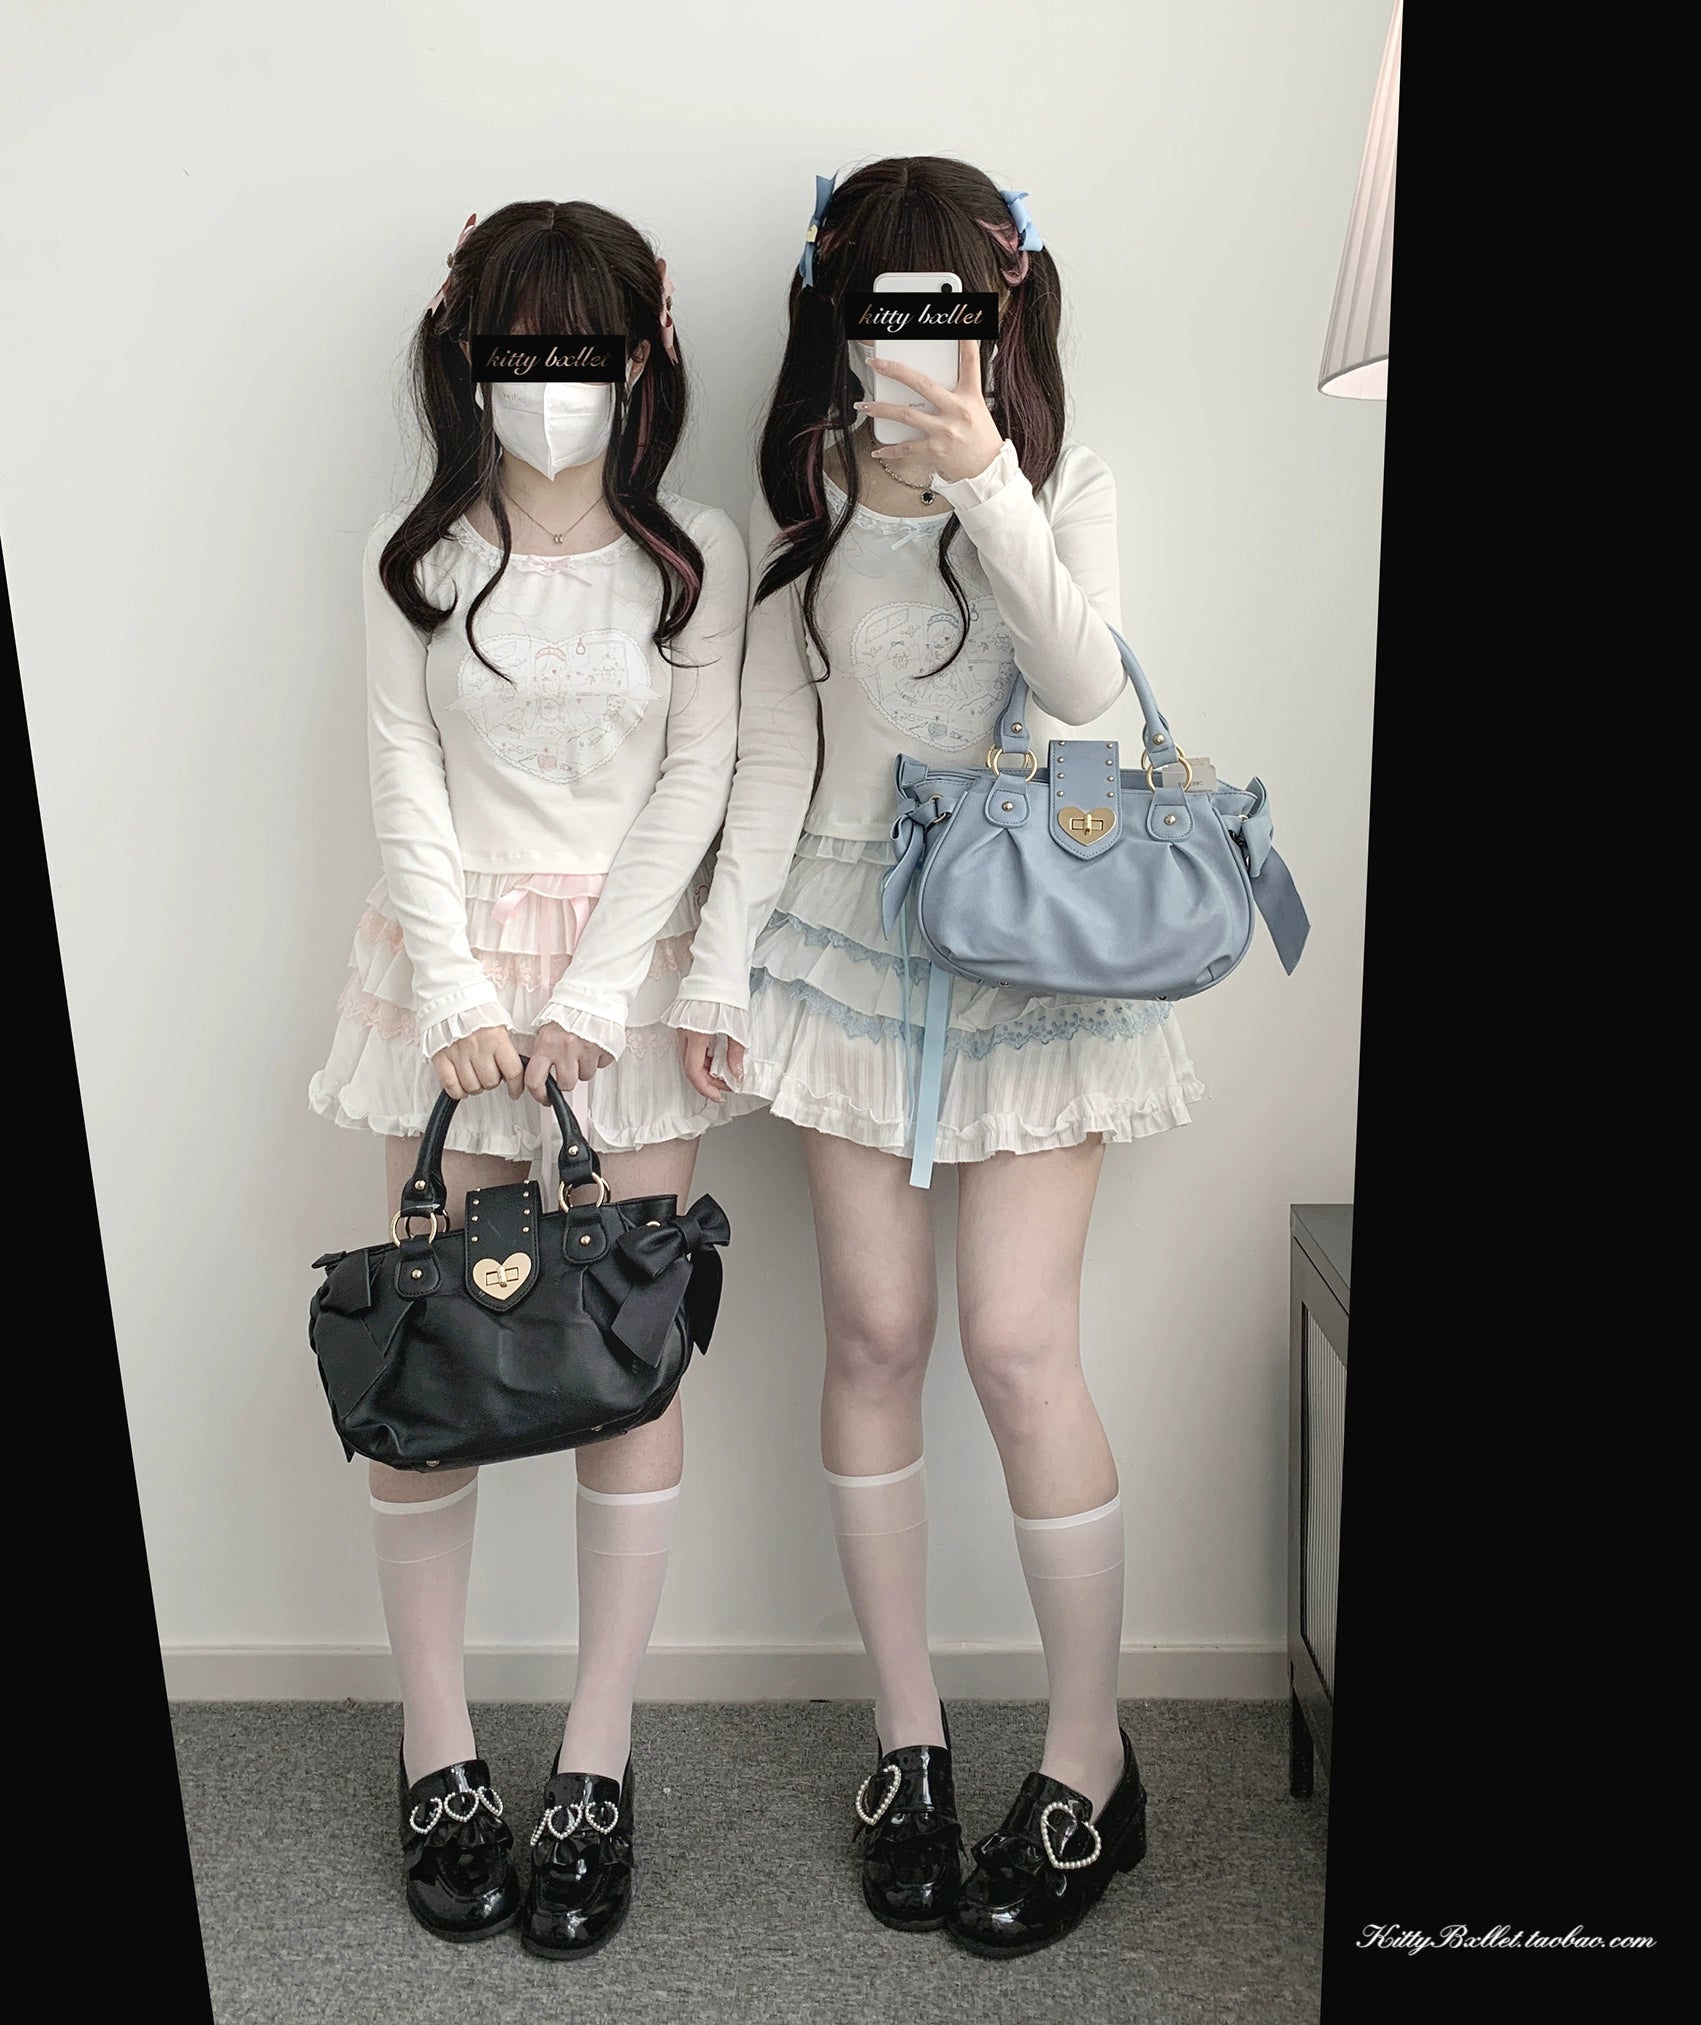 Ryousangata Skirt Lace Cake Skirt And Apron Set 36790:536140